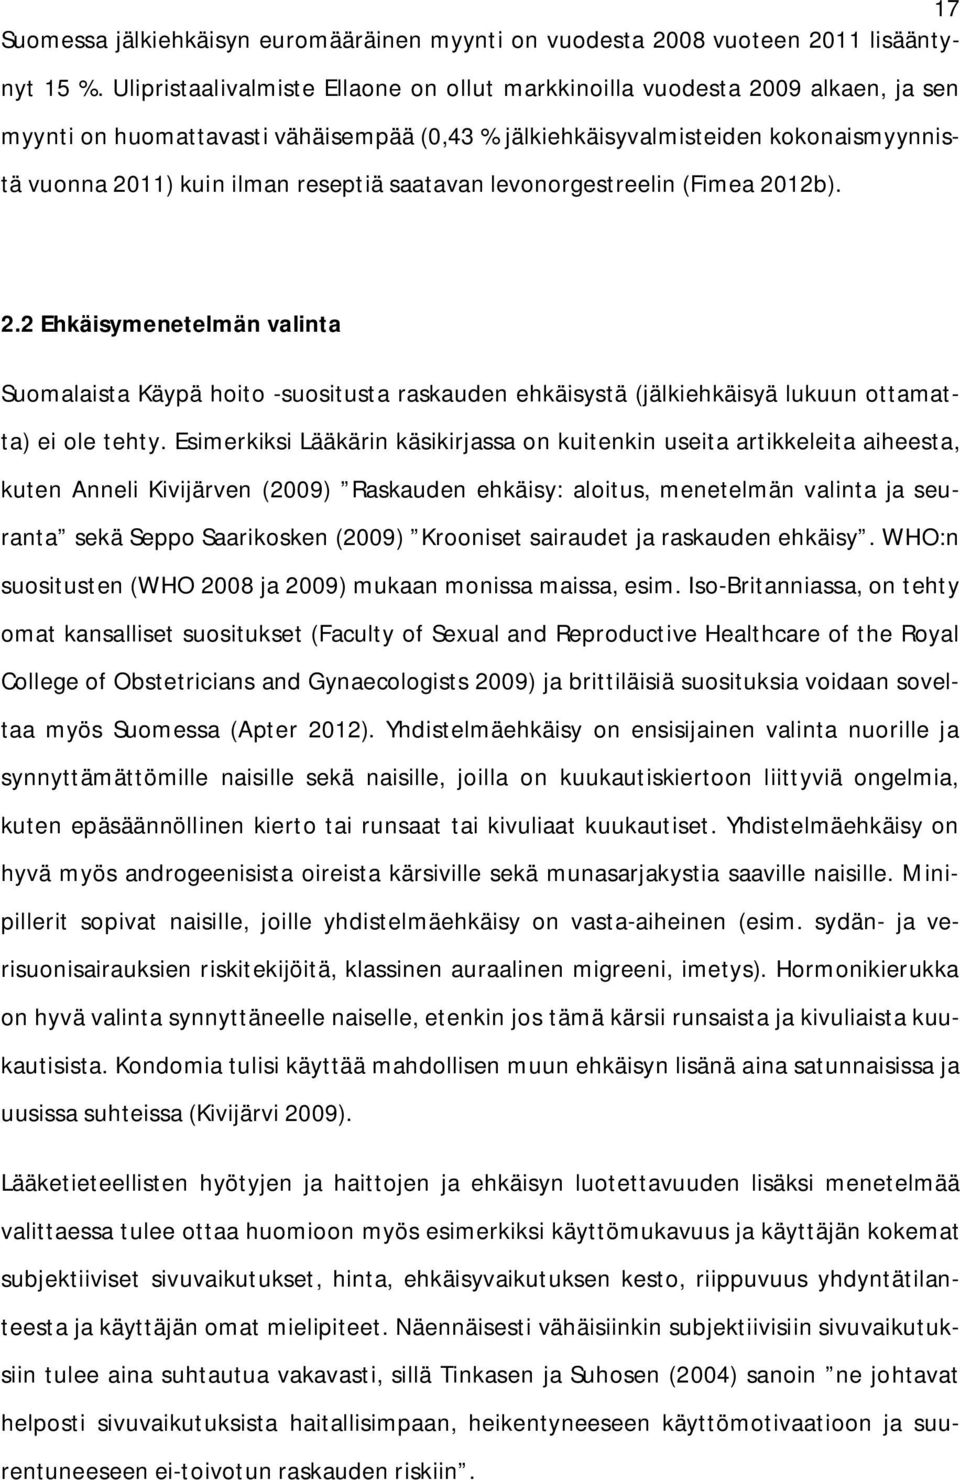 saatavan levonorgestreelin (Fimea 2012b). 2.2 Ehkäisymenetelmän valinta Suomalaista Käypä hoito -suositusta raskauden ehkäisystä (jälkiehkäisyä lukuun ottamatta) ei ole tehty.